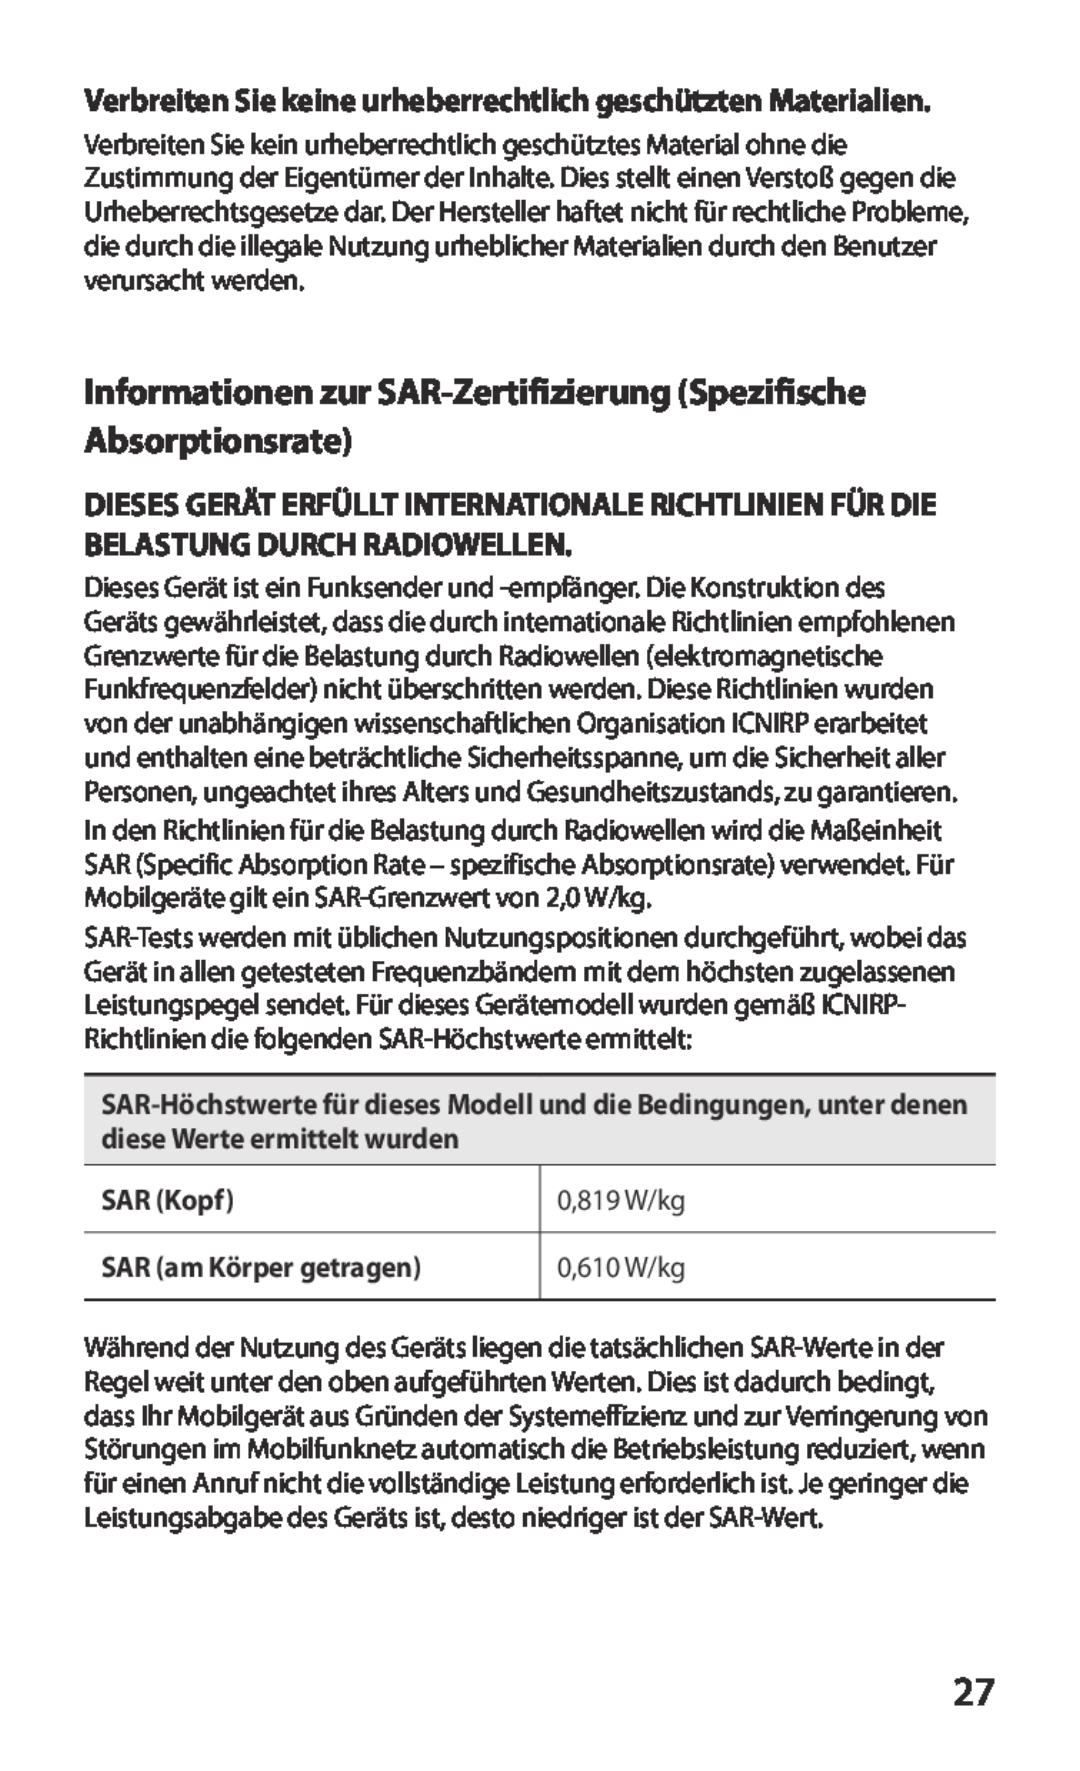 Samsung GT-P3100ZWETPH Informationen zur SAR-Zertifizierung Spezifische Absorptionsrate, SAR Kopf, 0,819 W/kg, 0,610 W/kg 